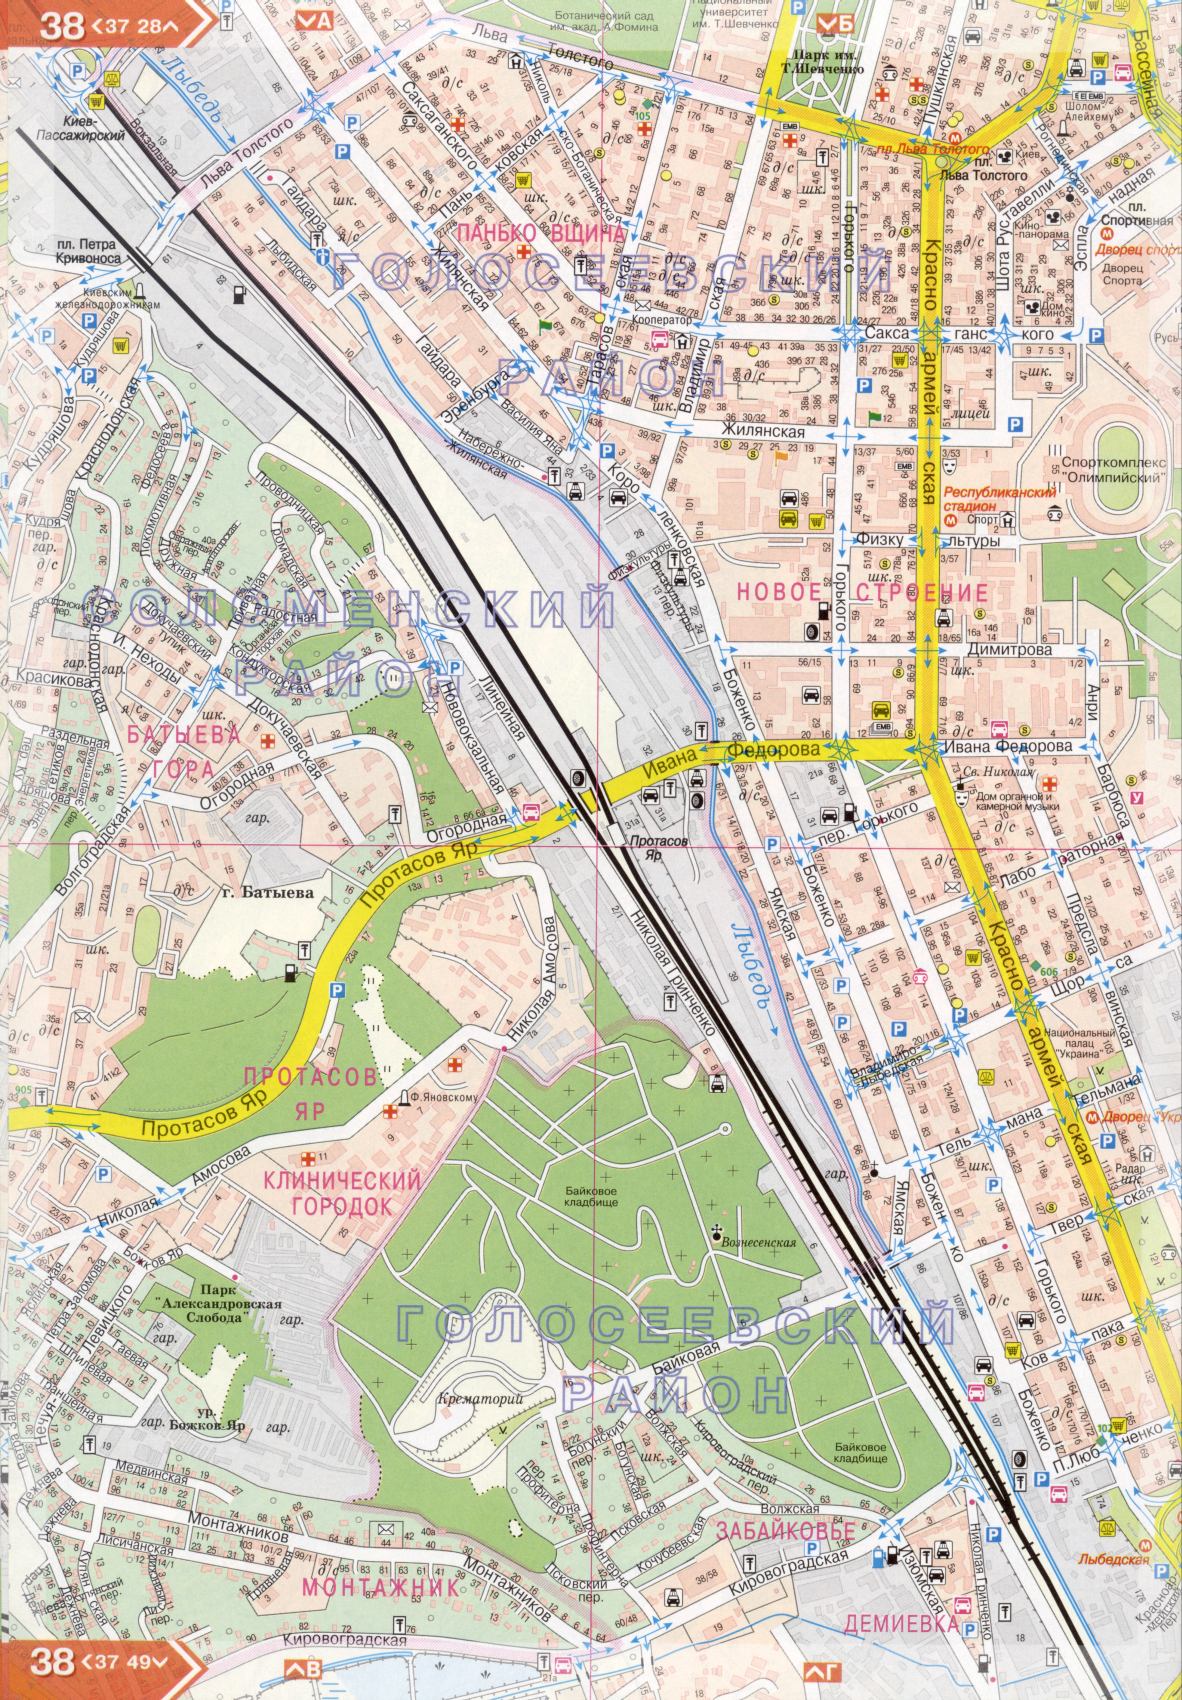 Карта Киева подробная в 1см=150м на 45 листах. Карта г.Киев из атласа автомобильных дорог. Скачать бесплатно подробную карту , E3